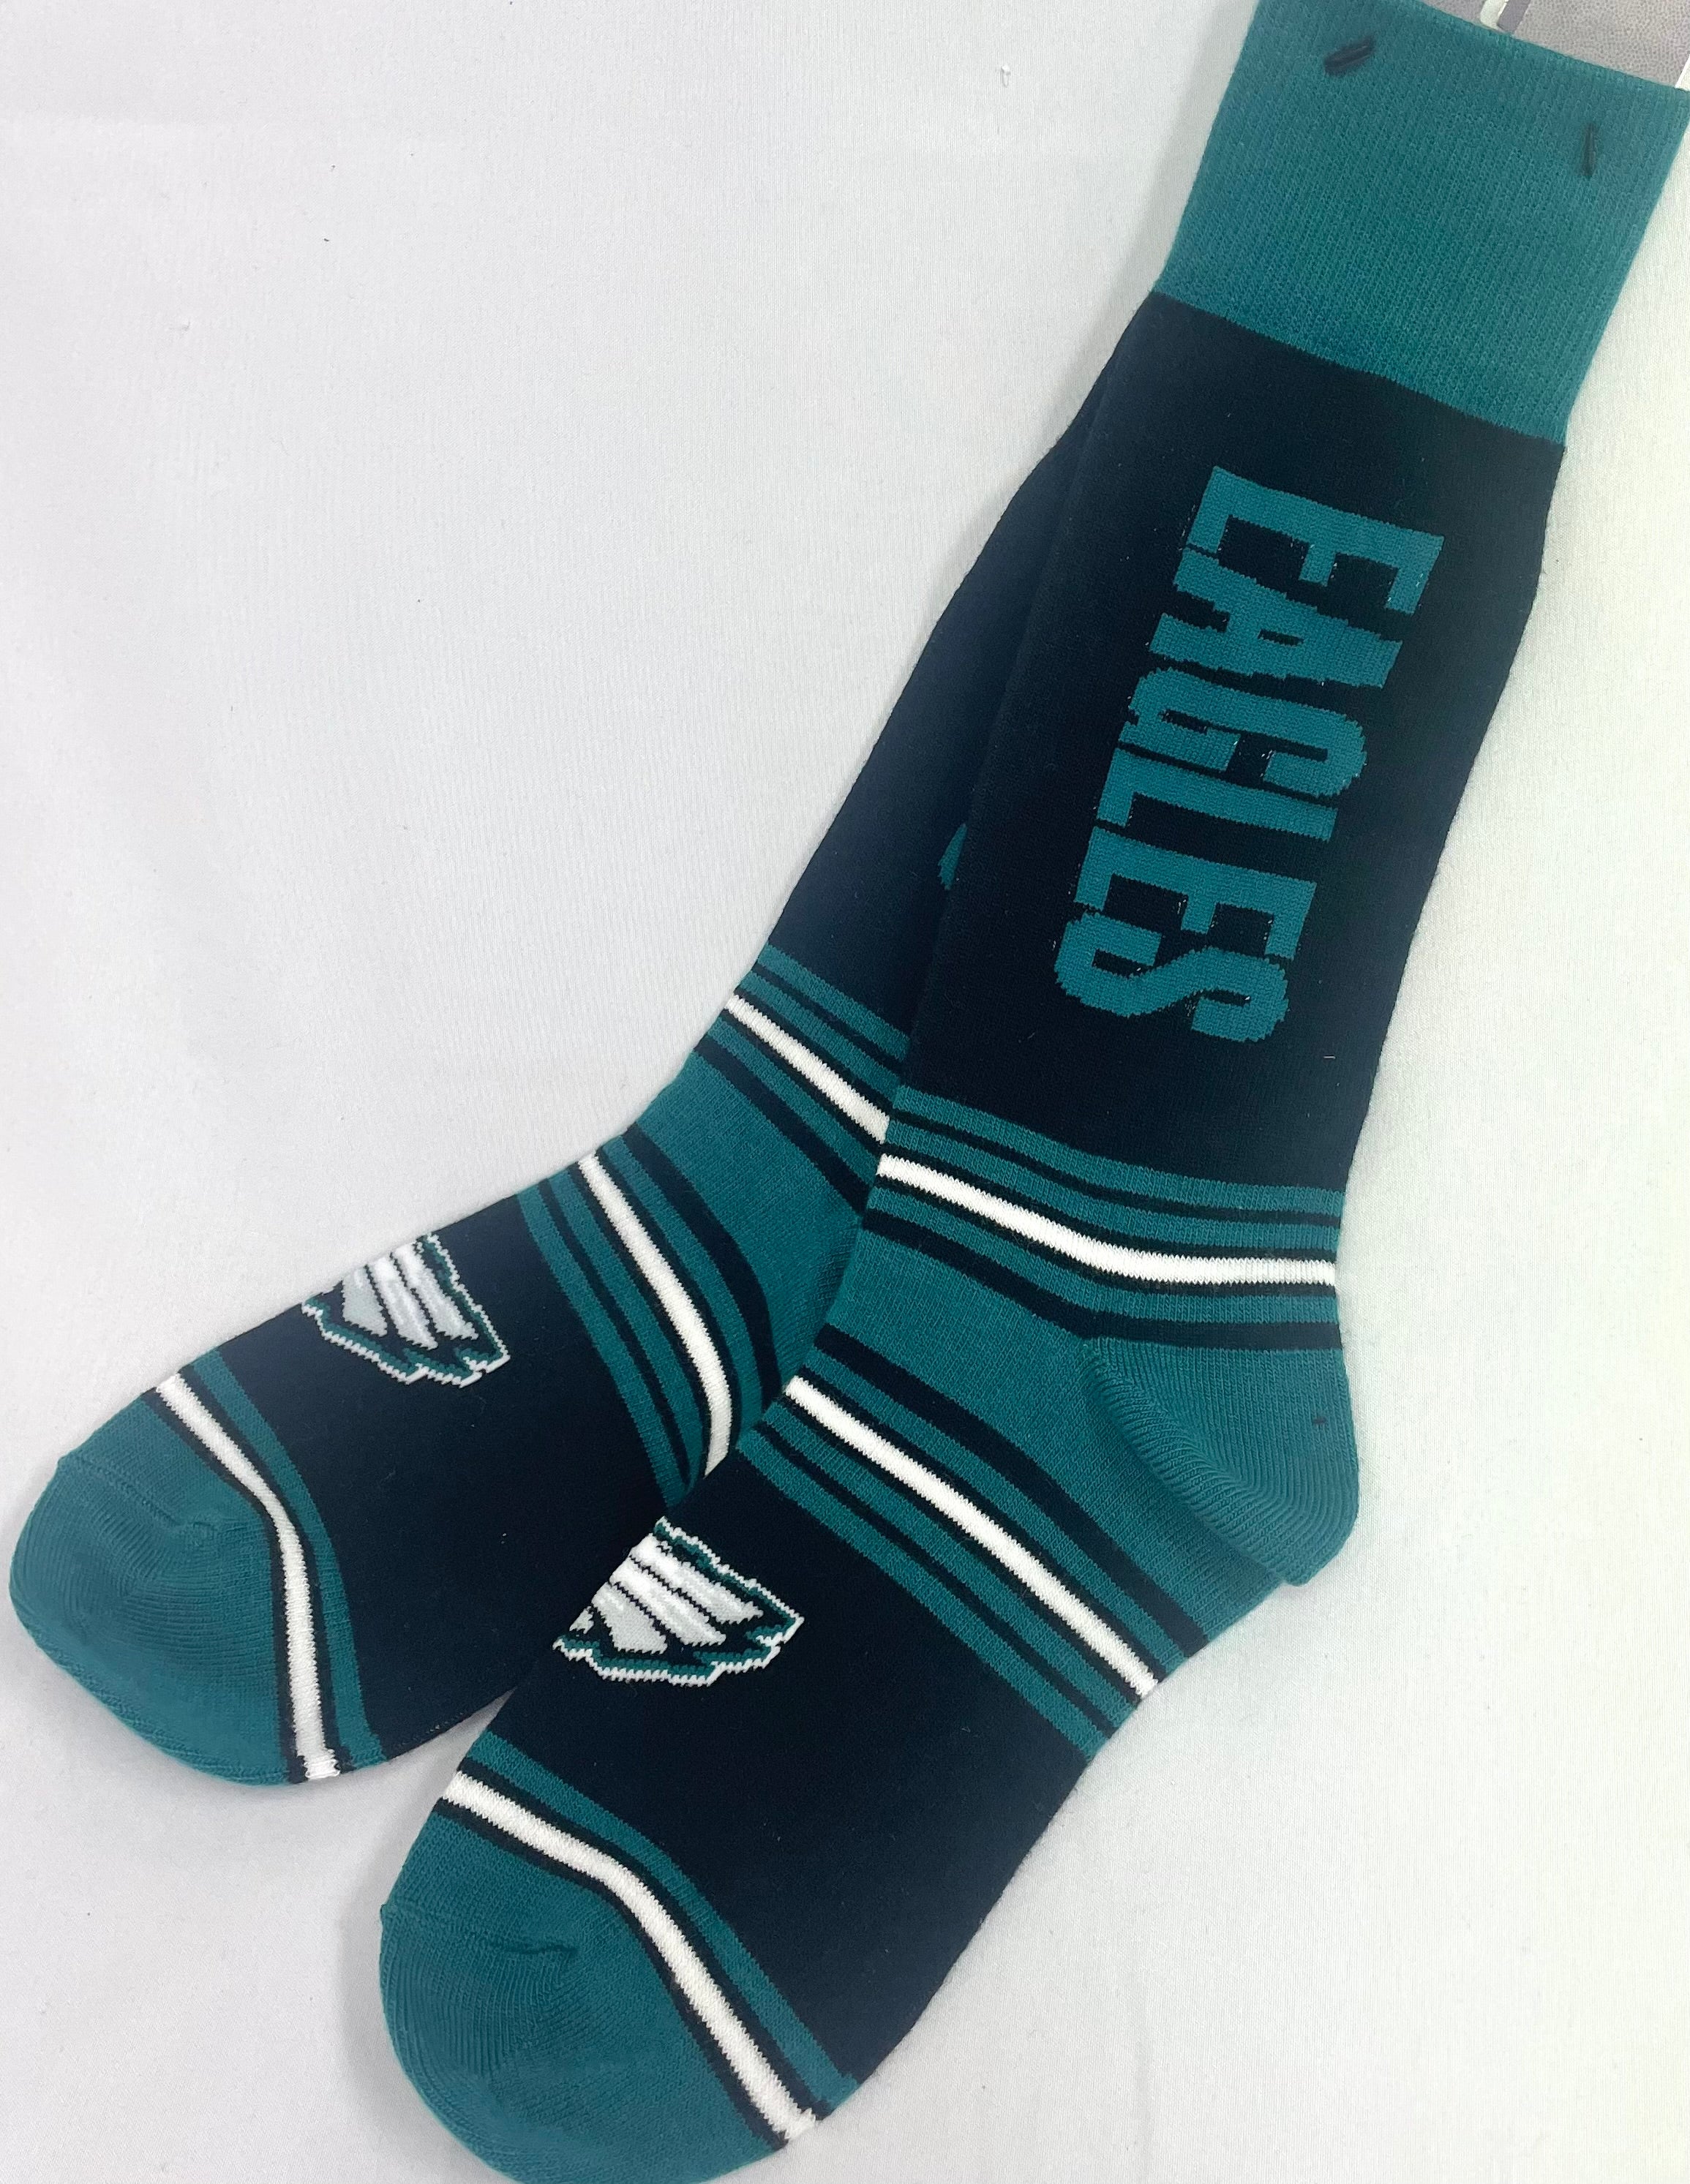 Philadelphia Eagles Go Team! Sleep Sock